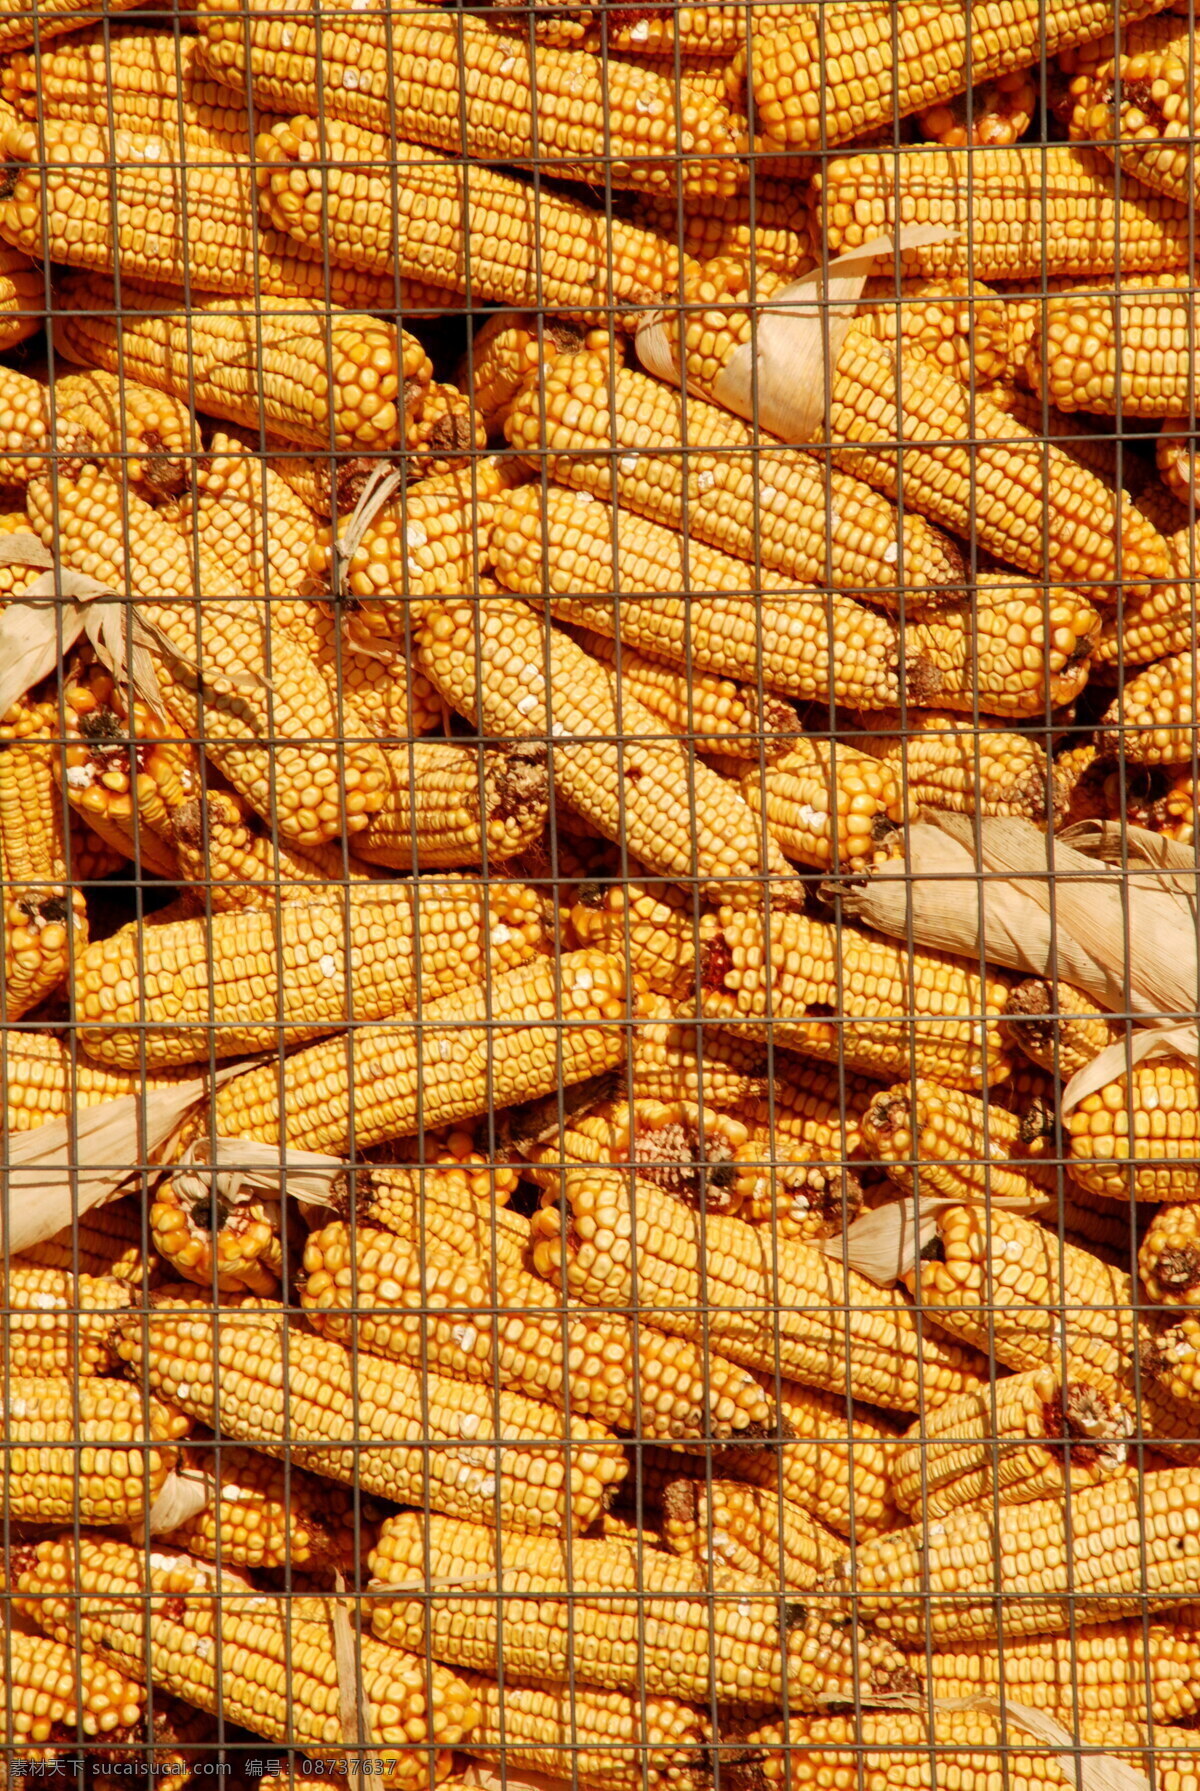 许多 金色 玉米 金色玉米 包谷 食物 食品 玉米棒 粮食 农产品 食材 食物原料 食材原料 玉米穗 玉米粒 农作物 特写 丰收 网 铁质 囤起来 堆起来 许多玉米 高清图片 蔬菜图片 餐饮美食